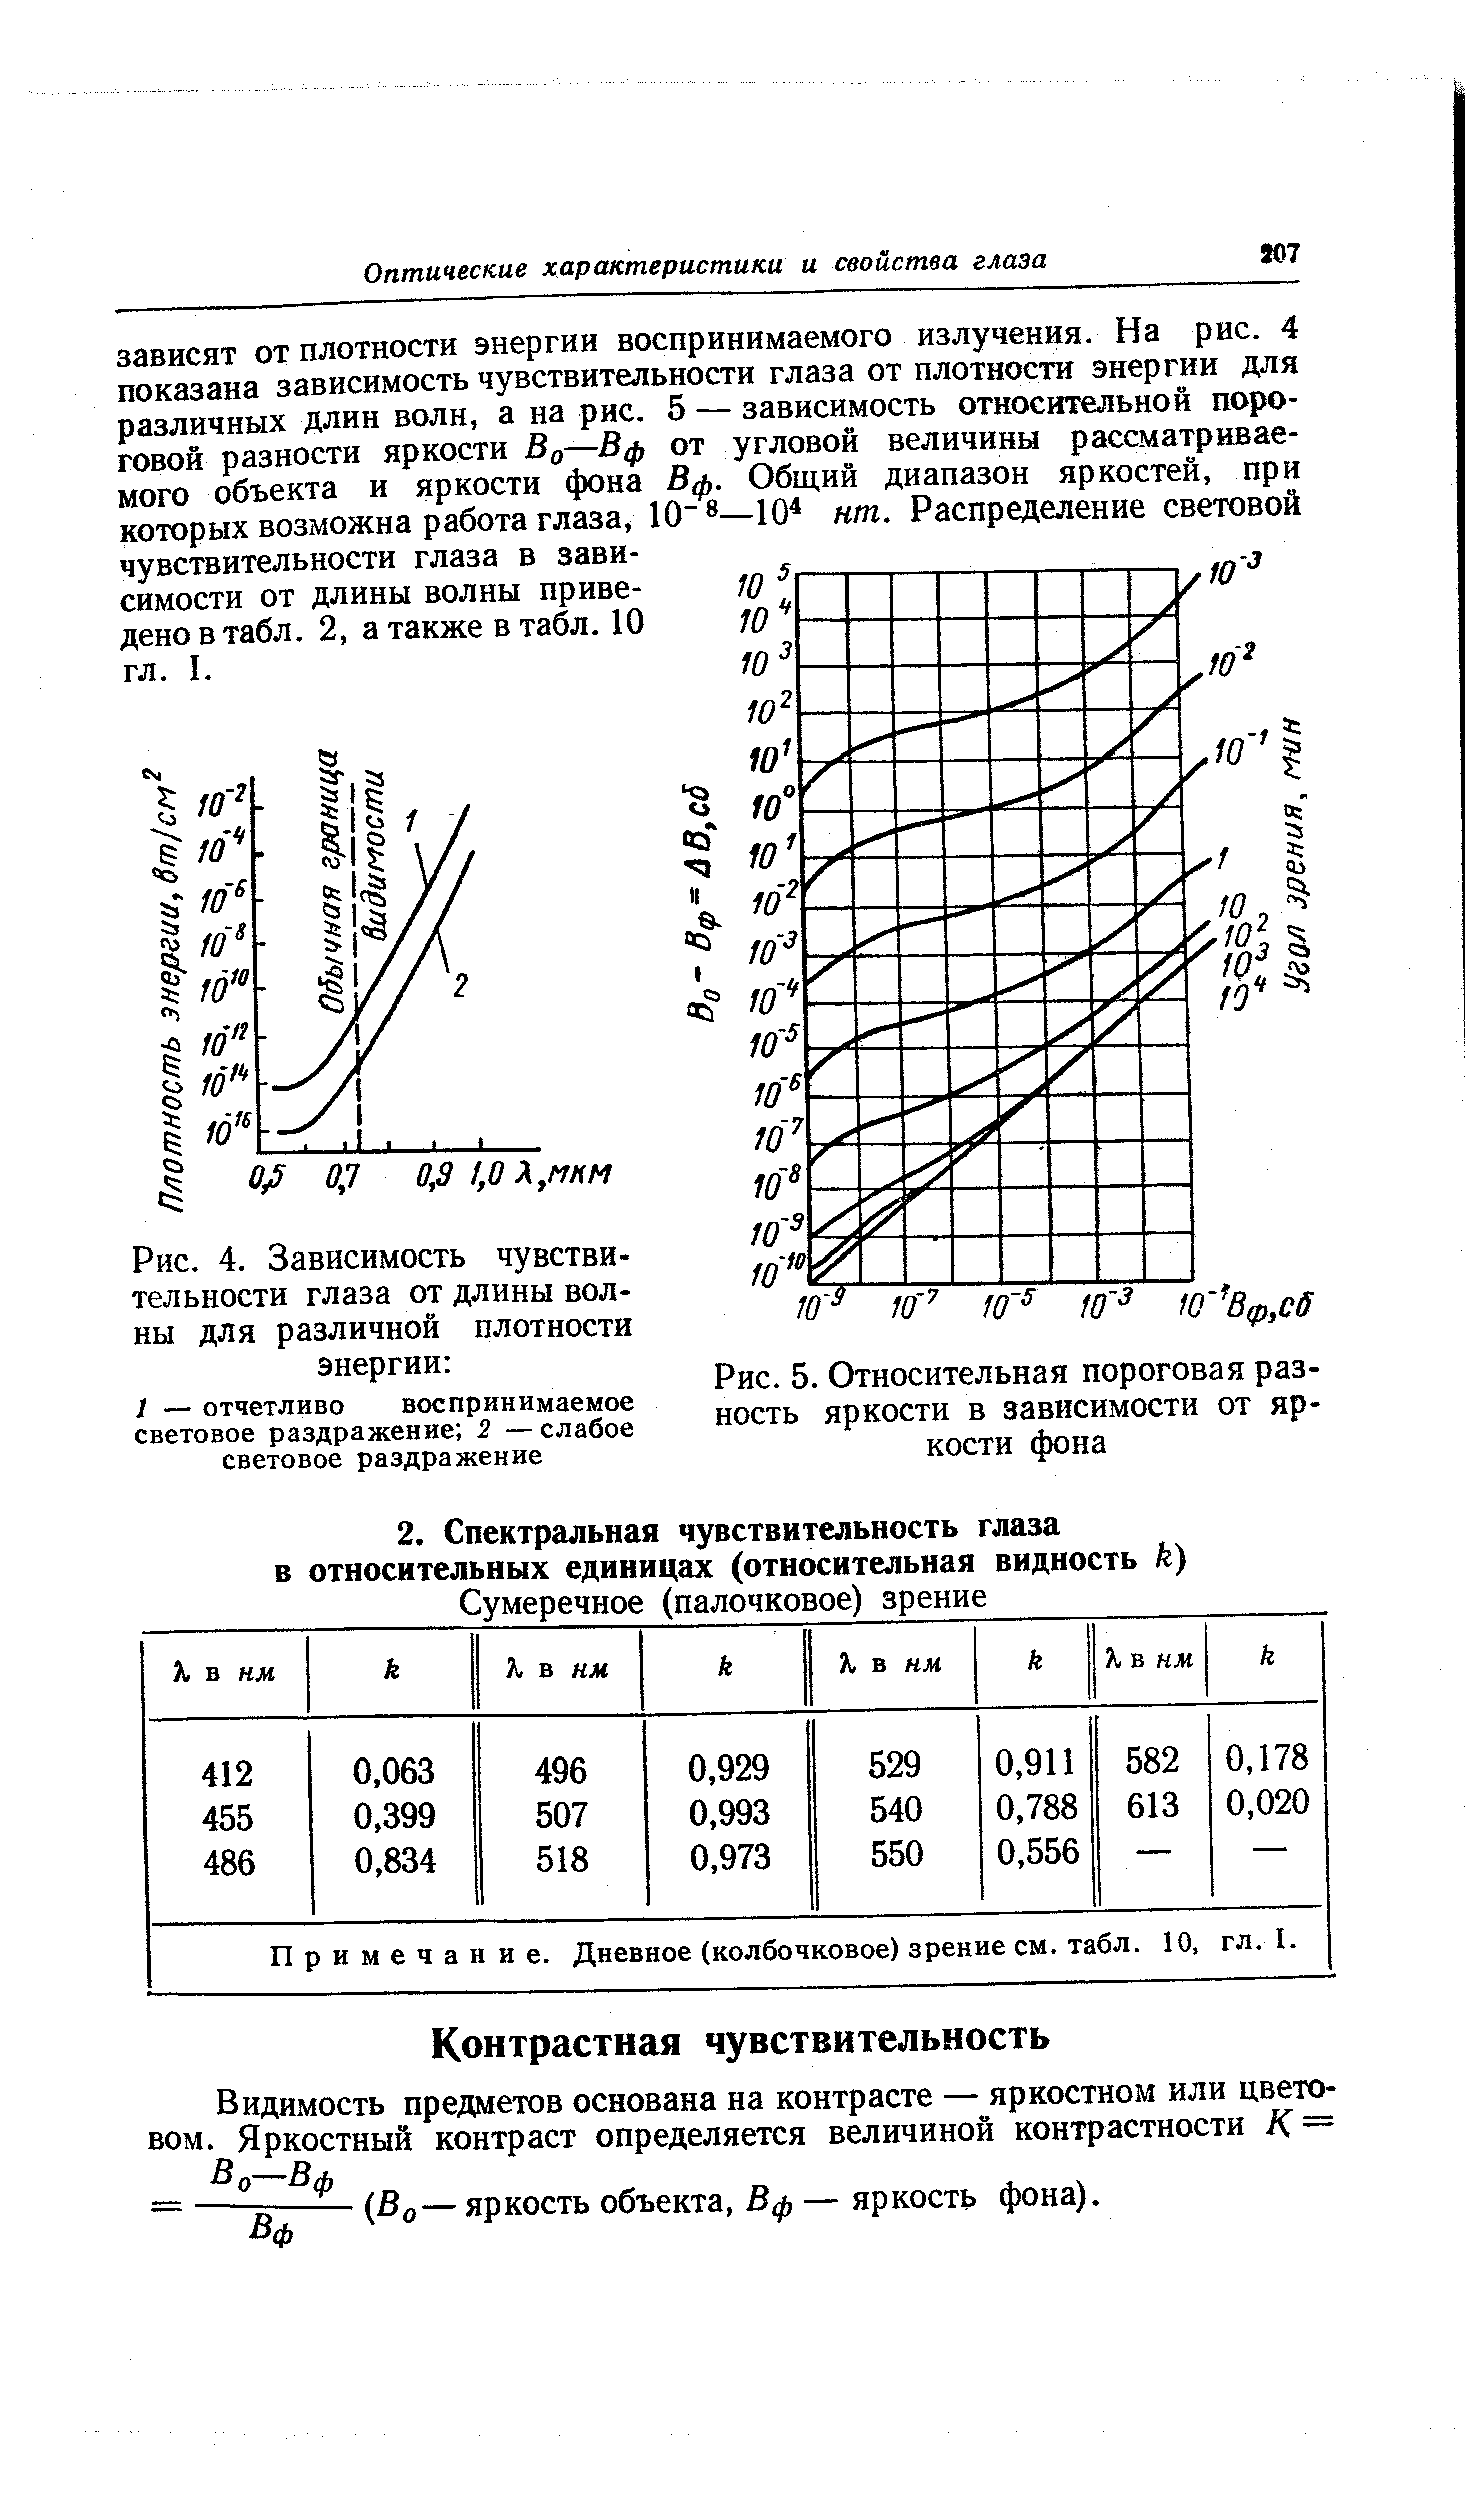 Рис. 5. Относительная пороговая разность яркости в зависимости от яркости фона
